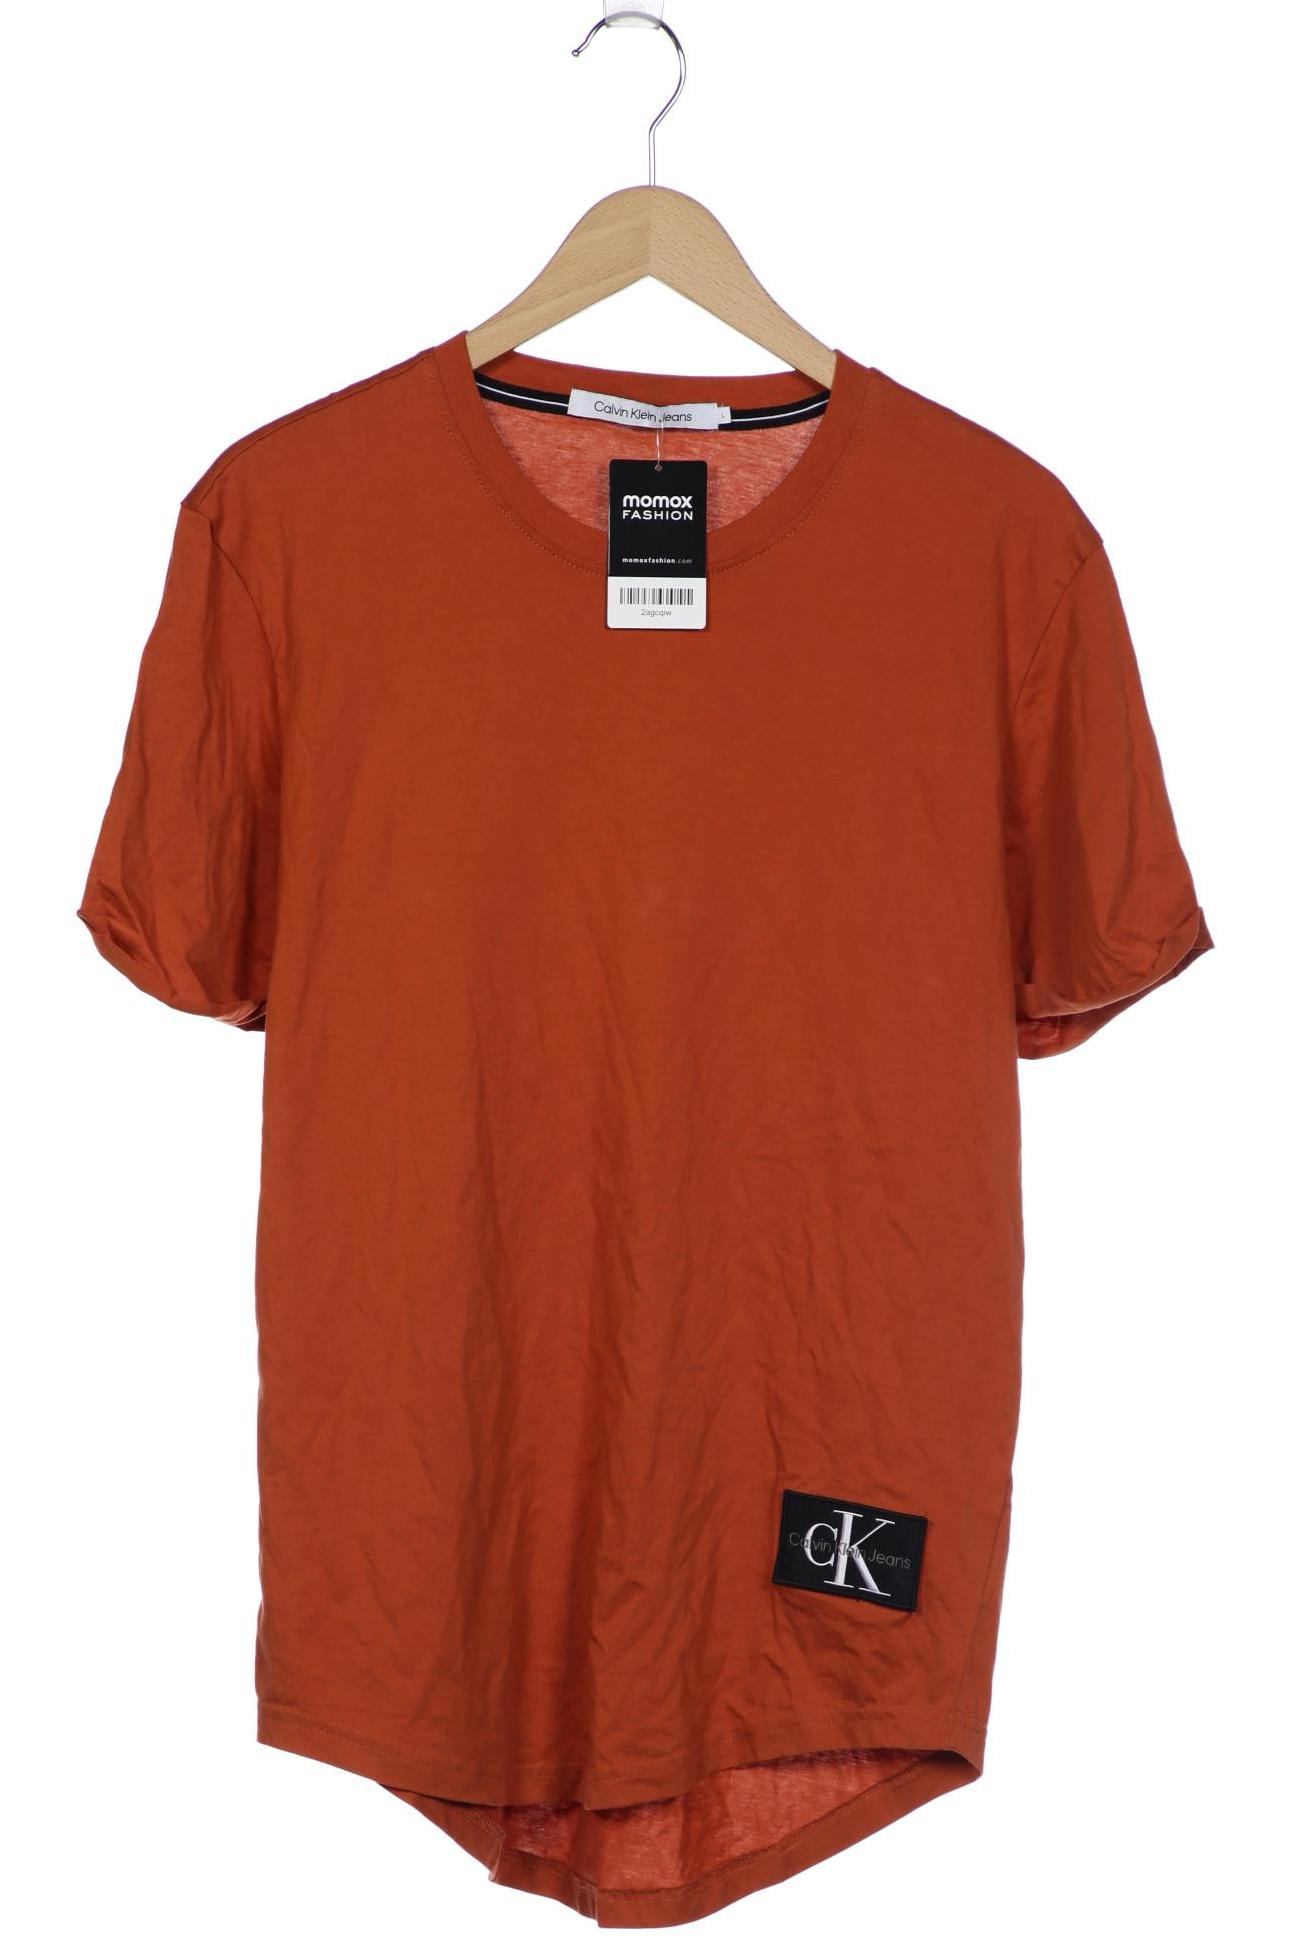 Calvin Klein Jeans Herren T-Shirt, orange von Calvin Klein Jeans